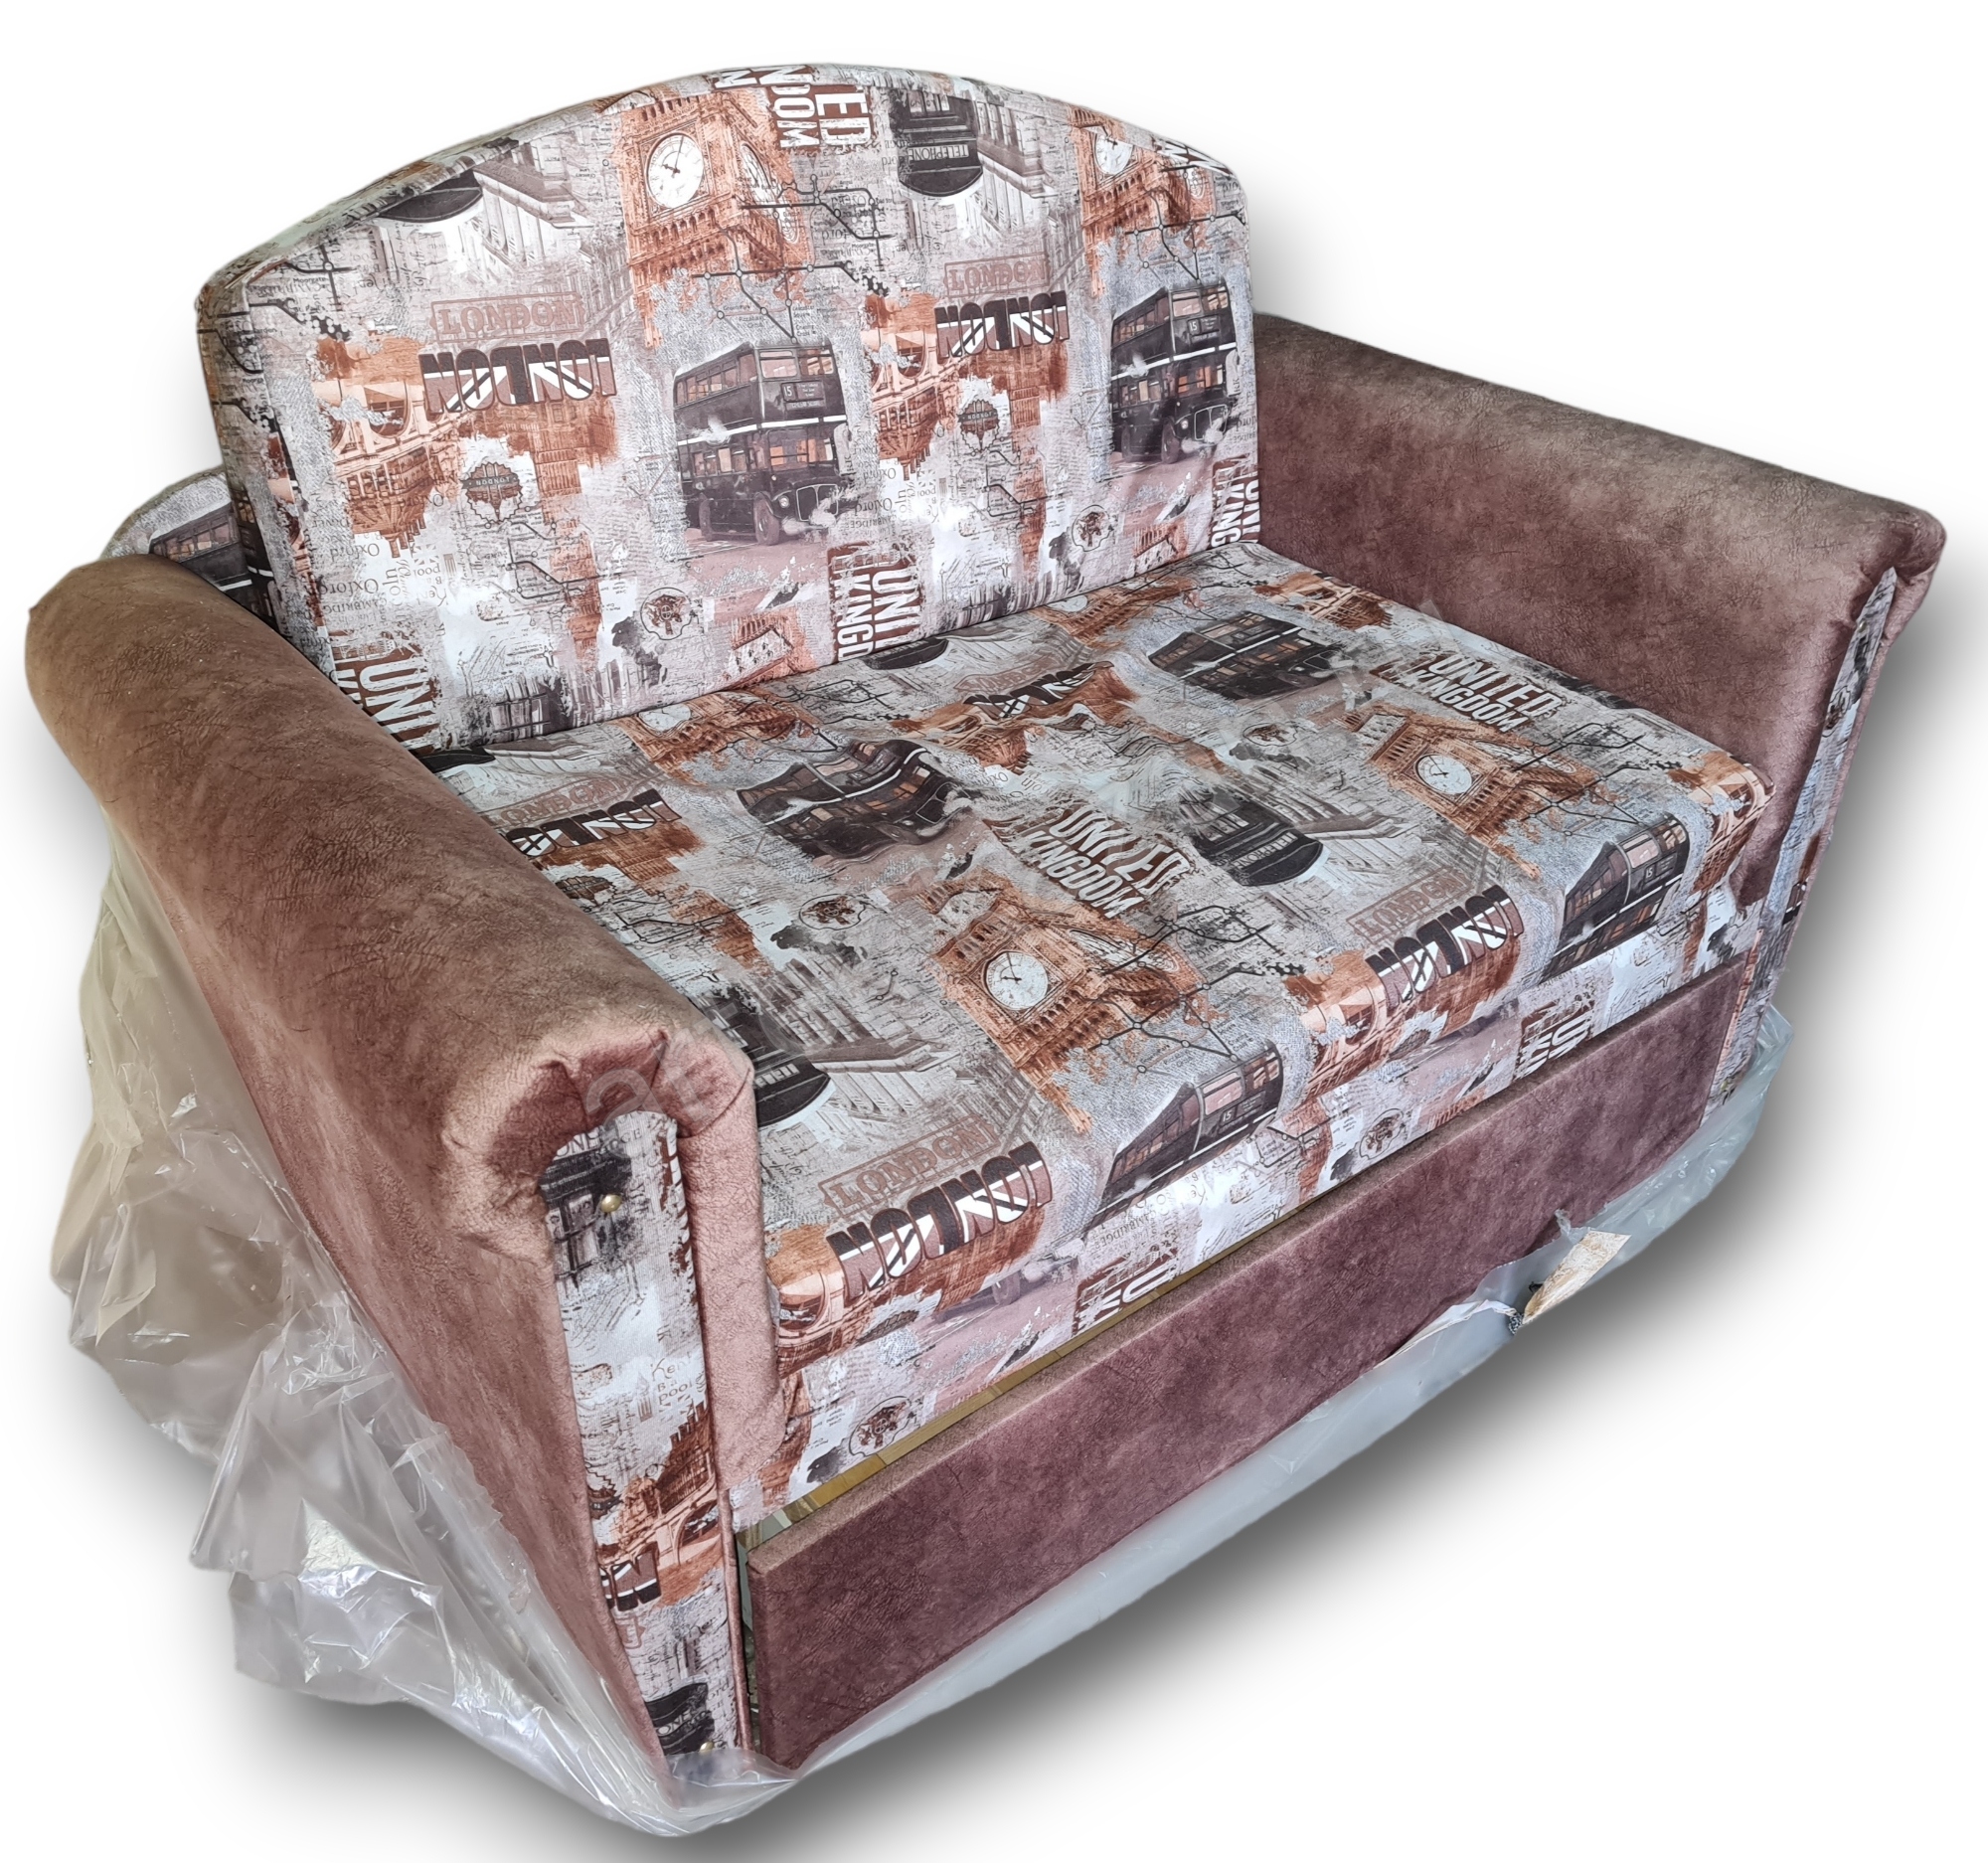 впередвыкатной диван Лика фото № 14. Купить недорогой диван по низкой цене от производителя можно у нас.